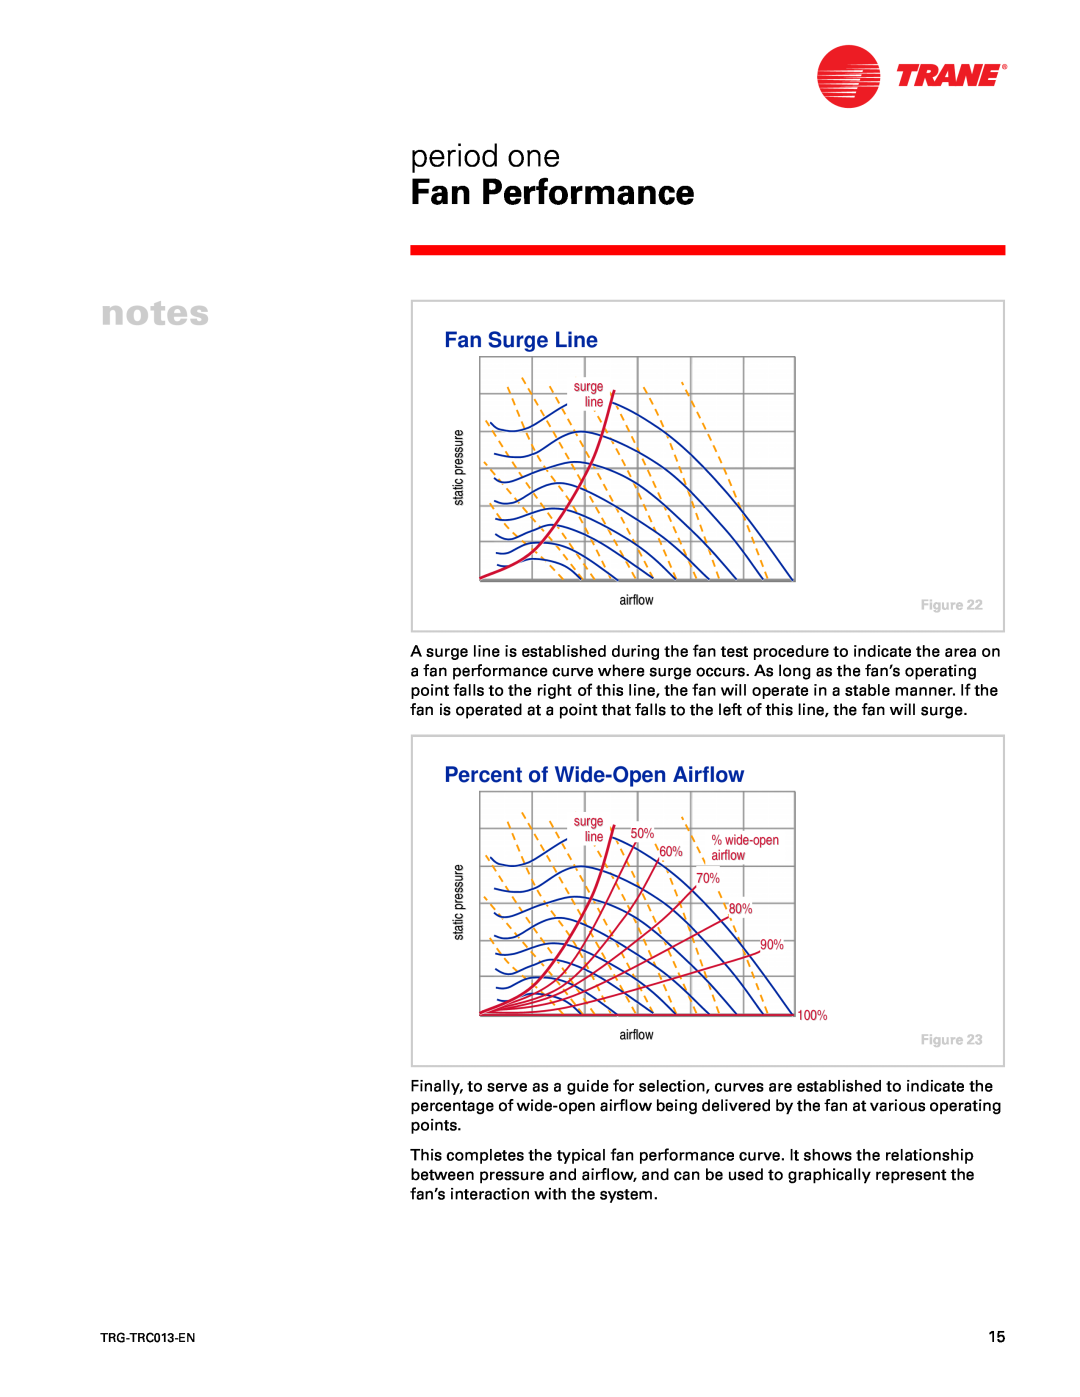 Trane TRG-TRC013-EN manual Fan Surge Line, Percent of Wide-OpenAirflow 